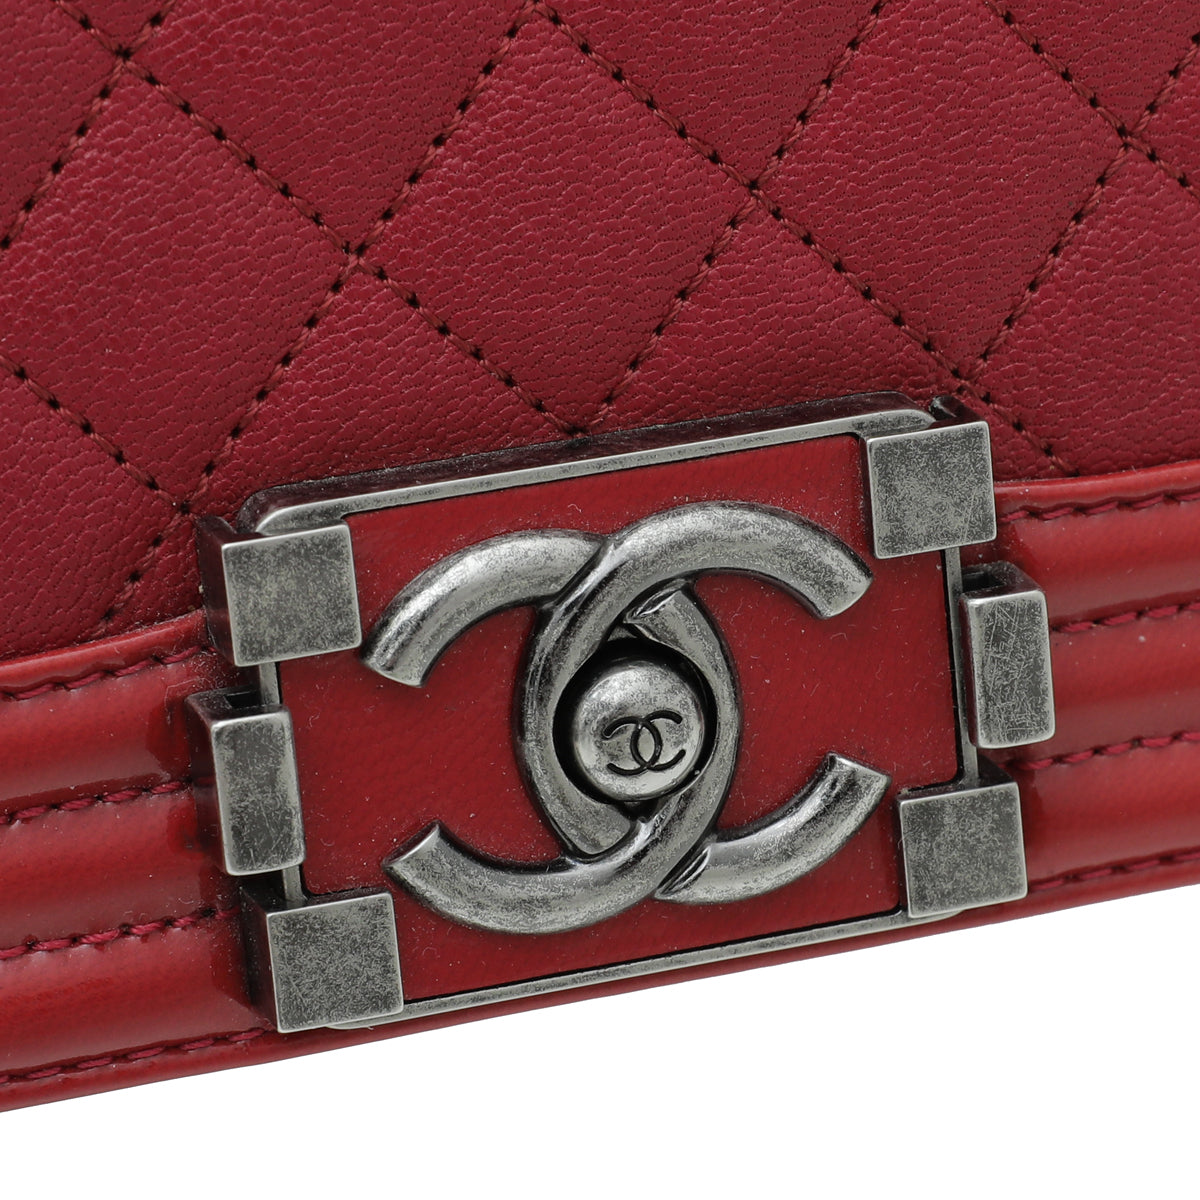 Chanel Red Le Boy Medium Bag